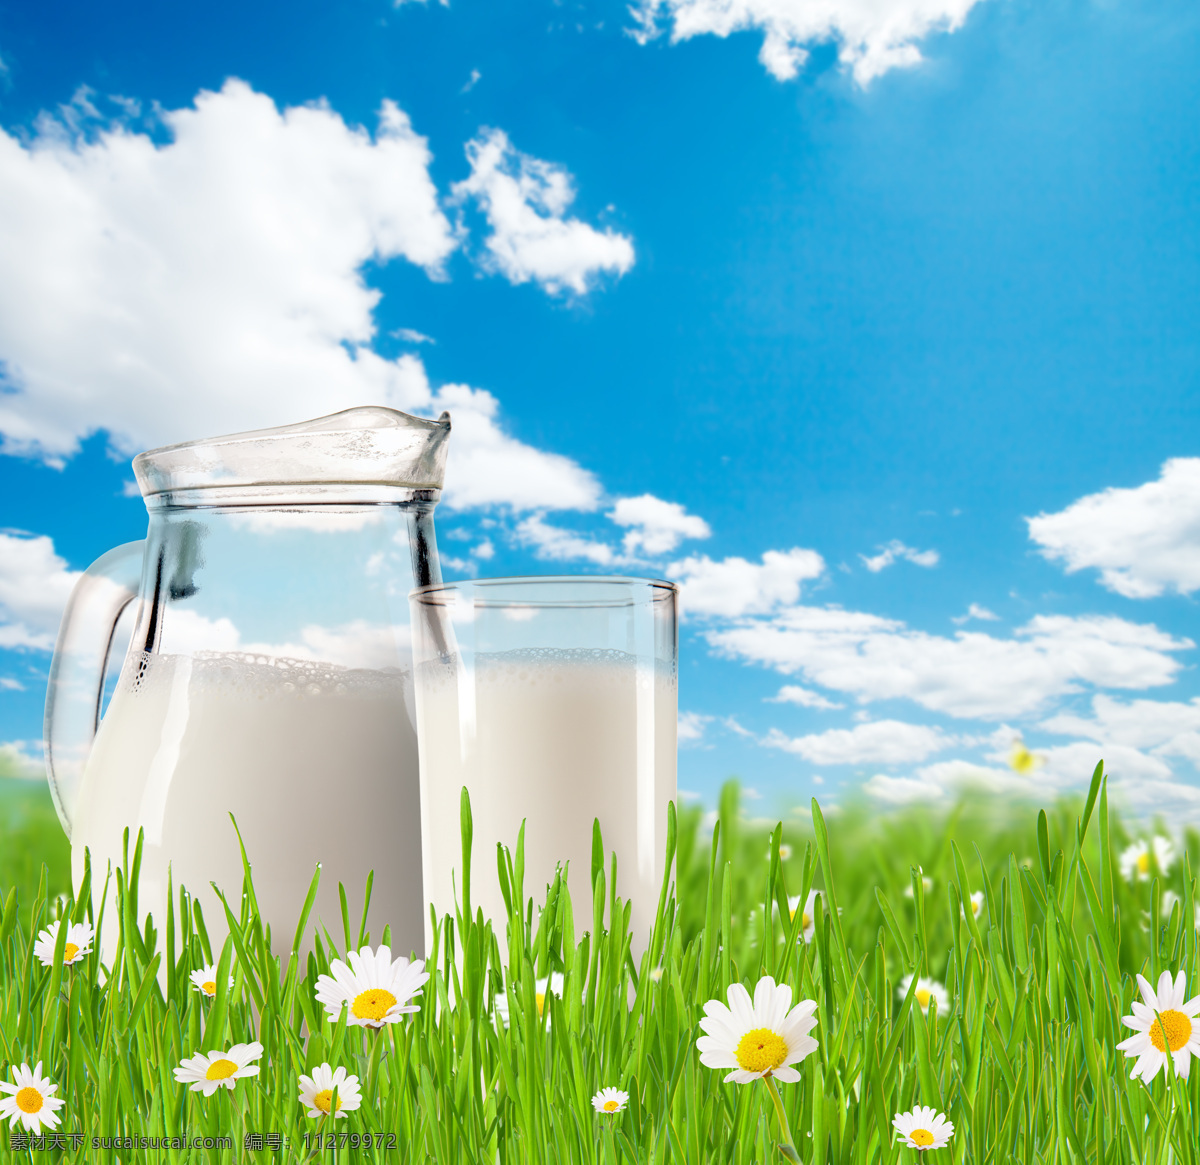 早餐牛奶 奶粉 牛乳 酸牛奶 酸奶 优酸乳 鲜牛奶 饮品 饮料 牛奶广告 milk 牛奶杯 容器 牛奶容器 生活百科 生活用品